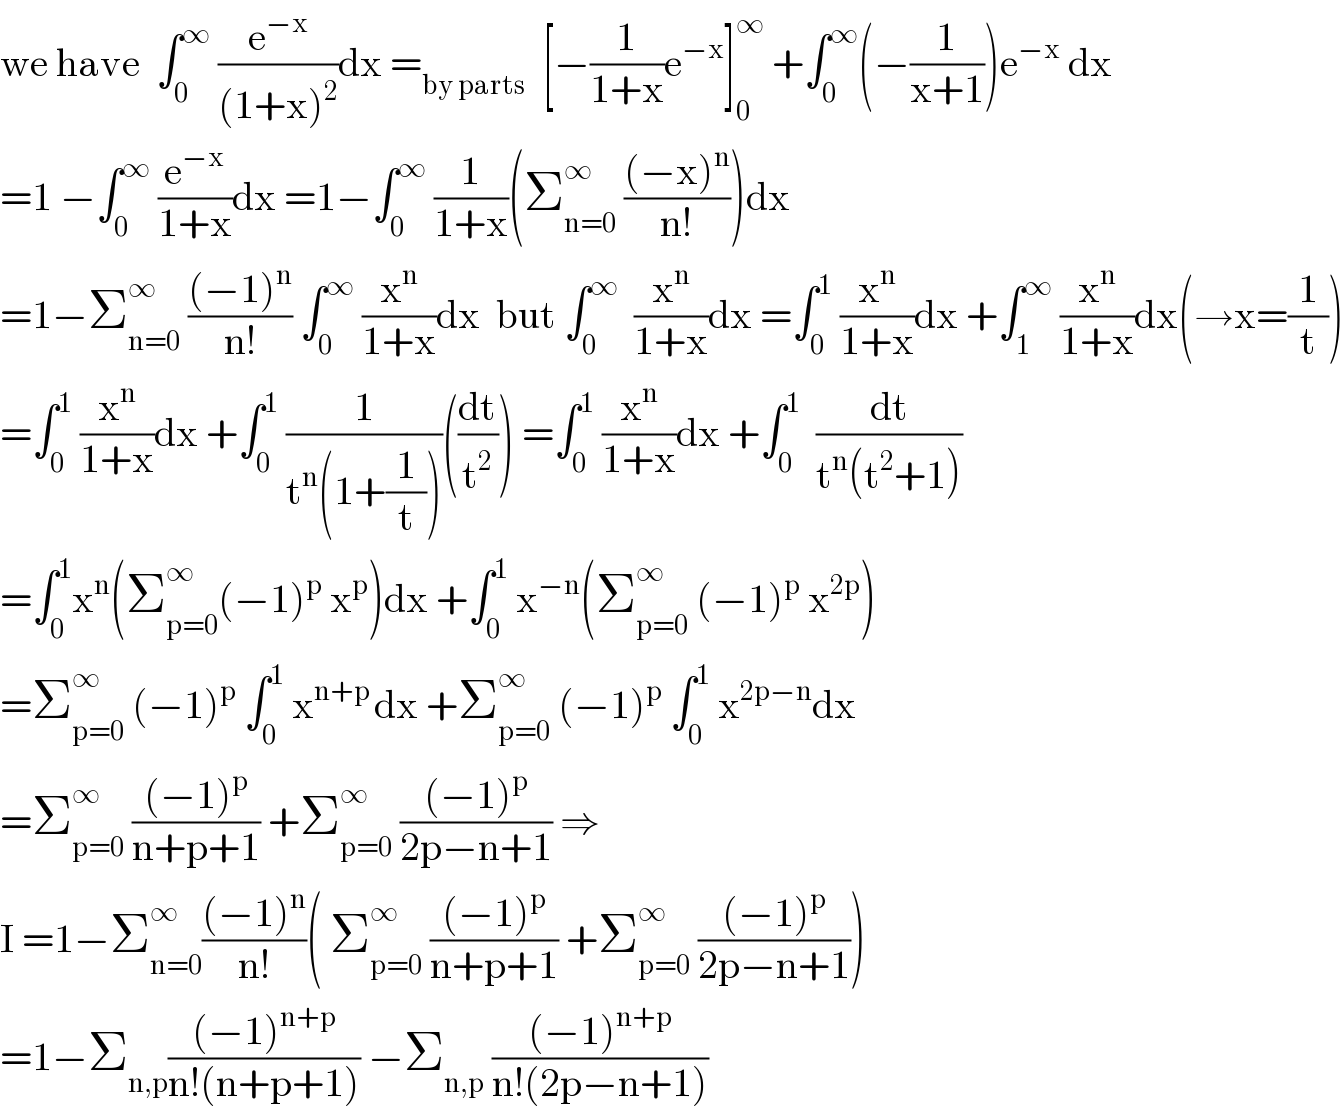 we have  ∫_0 ^∞  (e^(−x) /((1+x)^2 ))dx =_(by parts)   [−(1/(1+x))e^(−x) ]_0 ^∞  +∫_0 ^∞ (−(1/(x+1)))e^(−x)  dx  =1 −∫_0 ^∞  (e^(−x) /(1+x))dx =1−∫_0 ^∞  (1/(1+x))(Σ_(n=0) ^∞  (((−x)^n )/(n!)))dx  =1−Σ_(n=0) ^∞  (((−1)^n )/(n!)) ∫_0 ^∞  (x^n /(1+x))dx  but ∫_0 ^∞   (x^n /(1+x))dx =∫_0 ^1  (x^n /(1+x))dx +∫_1 ^∞  (x^n /(1+x))dx(→x=(1/t))  =∫_0 ^1  (x^n /(1+x))dx +∫_0 ^1  (1/(t^n (1+(1/t))))((dt/t^2 )) =∫_0 ^1  (x^n /(1+x))dx +∫_0 ^1   (dt/(t^n (t^2 +1)))  =∫_0 ^1 x^n (Σ_(p=0) ^∞ (−1)^p  x^p )dx +∫_0 ^1  x^(−n) (Σ_(p=0) ^∞  (−1)^p  x^(2p) )  =Σ_(p=0) ^∞  (−1)^p  ∫_0 ^1  x^(n+p ) dx +Σ_(p=0) ^∞  (−1)^p  ∫_0 ^1  x^(2p−n) dx  =Σ_(p=0) ^∞  (((−1)^p )/(n+p+1)) +Σ_(p=0) ^∞  (((−1)^p )/(2p−n+1)) ⇒  I =1−Σ_(n=0) ^∞ (((−1)^n )/(n!))( Σ_(p=0) ^∞  (((−1)^p )/(n+p+1)) +Σ_(p=0) ^∞  (((−1)^p )/(2p−n+1)))  =1−Σ_(n,p) (((−1)^(n+p) )/(n!(n+p+1))) −Σ_(n,p)  (((−1)^(n+p) )/(n!(2p−n+1)))  